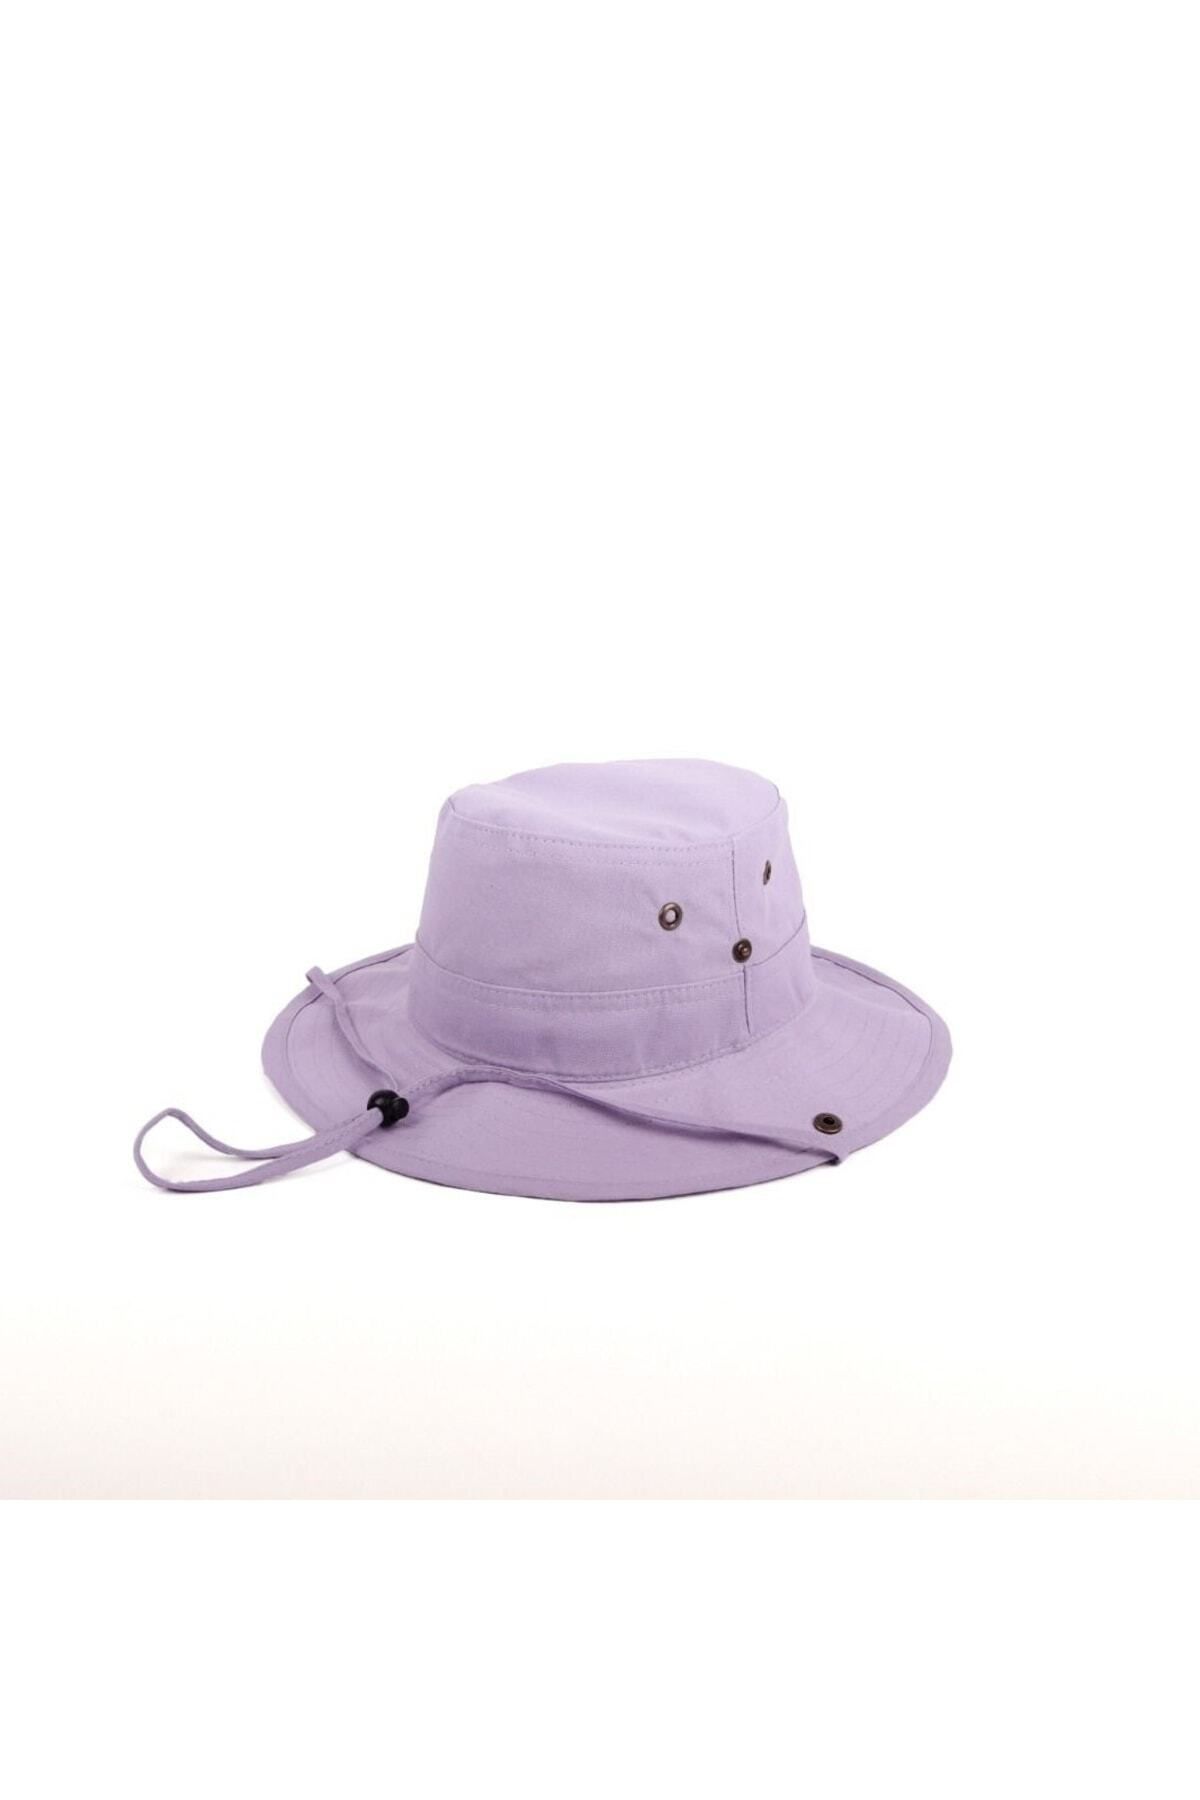 caxis Unisex Safari Fötr Şapka Yazlık Katlanabilir İnce Nesef Alan Kumaşdan  Yapılmıştır Fiyatı, Yorumları - Trendyol